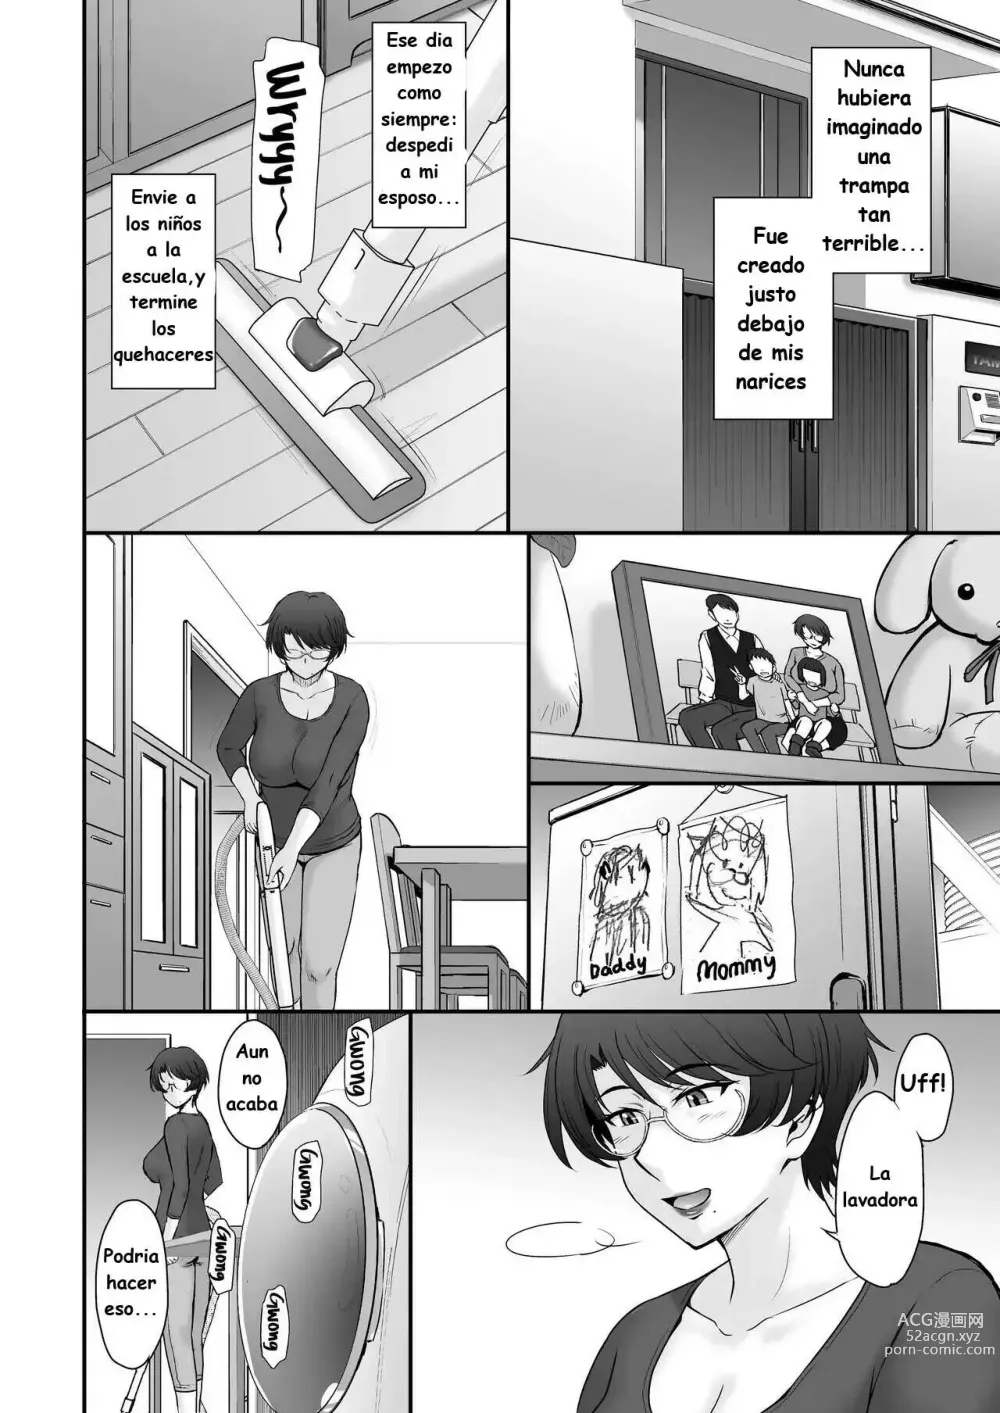 Page 3 of manga Mensajeria de vecina fue entregado en mi casa por error